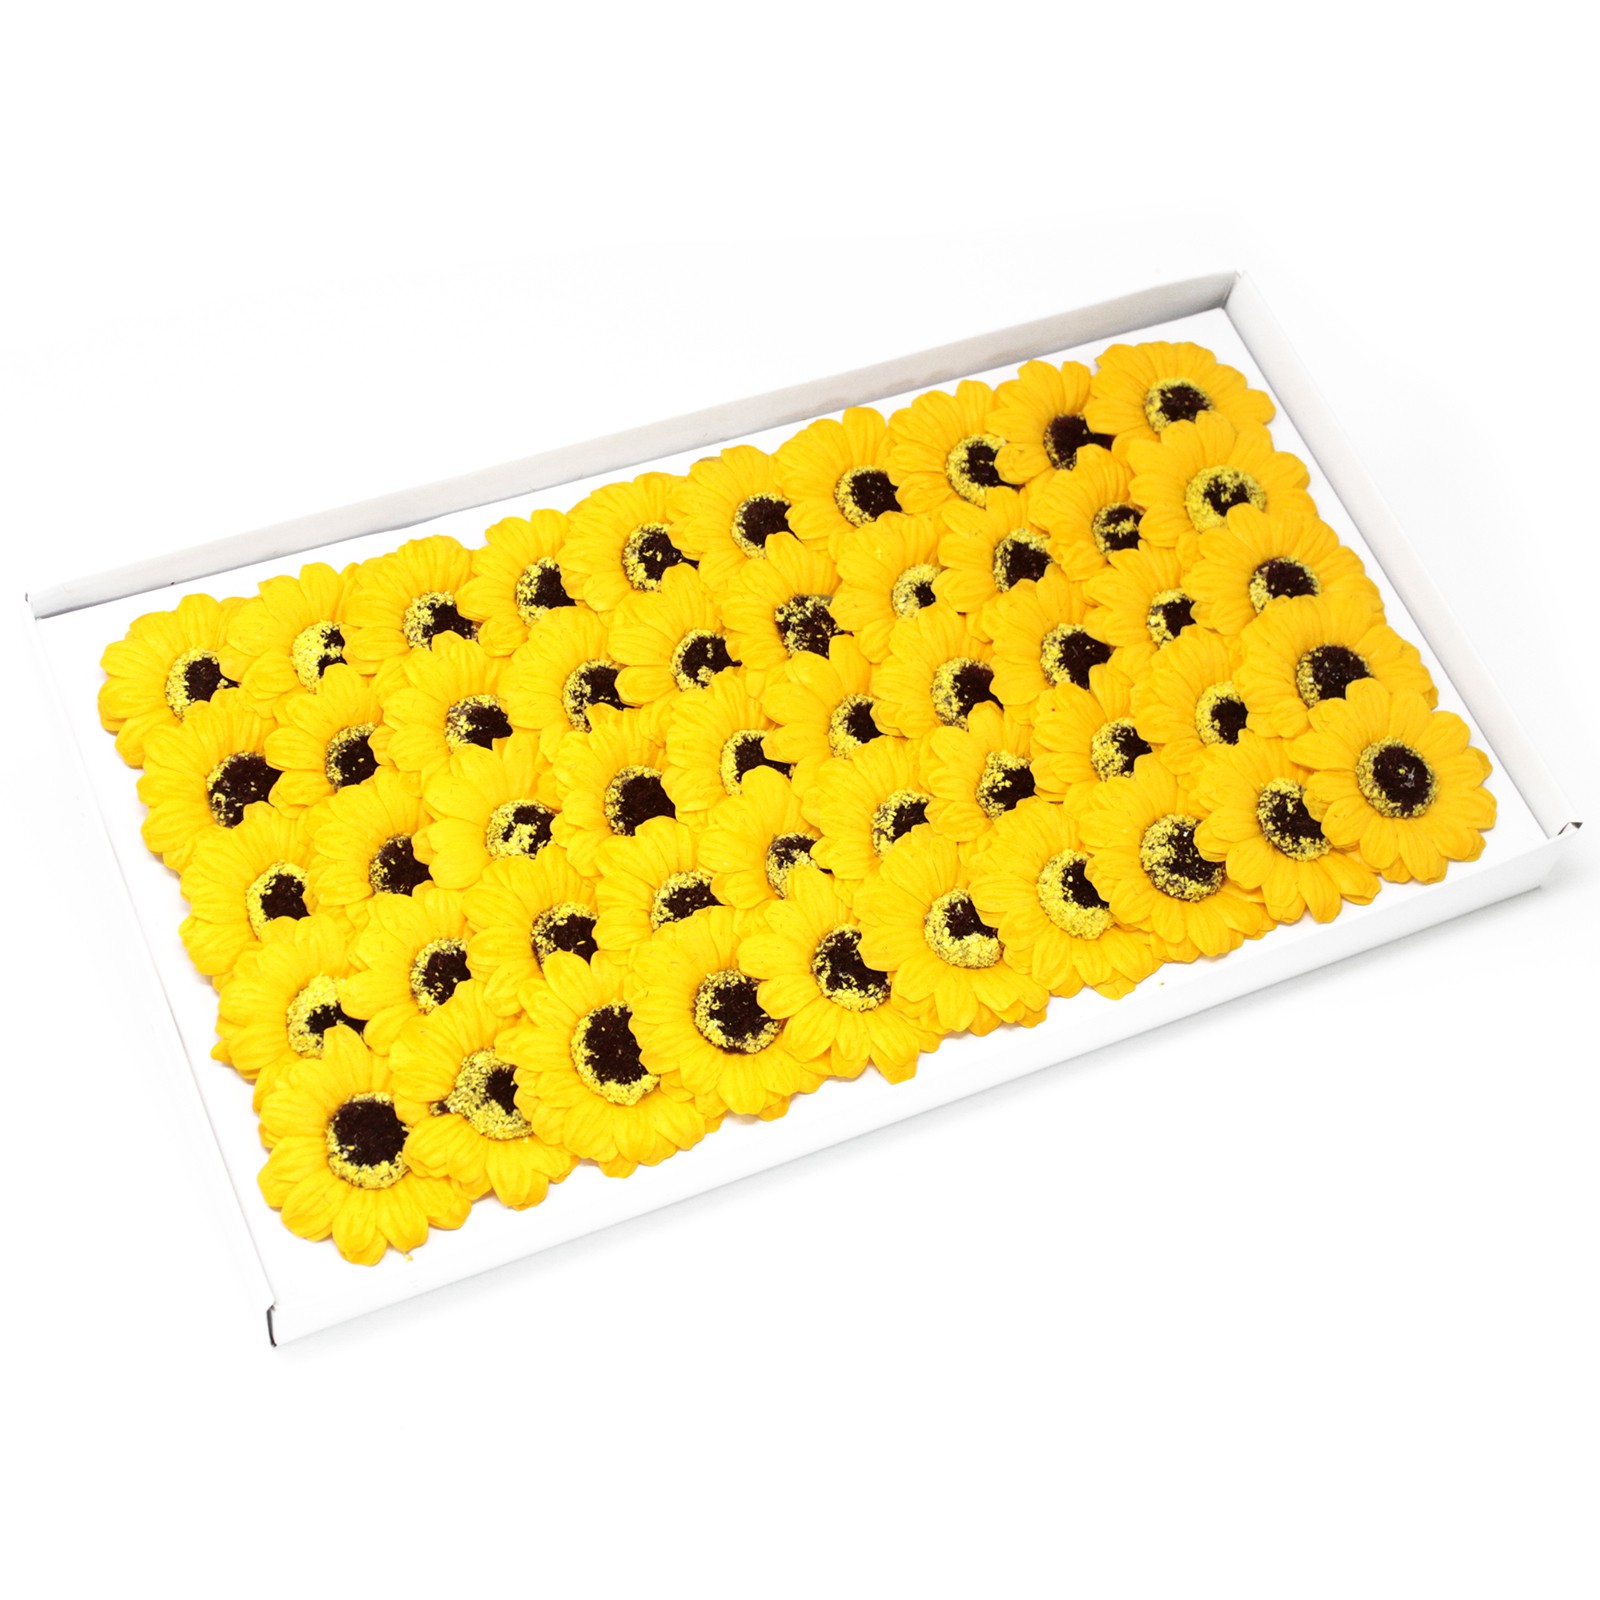 Mýdlové květy - Malé slunečnice - Žluté (50 ks)